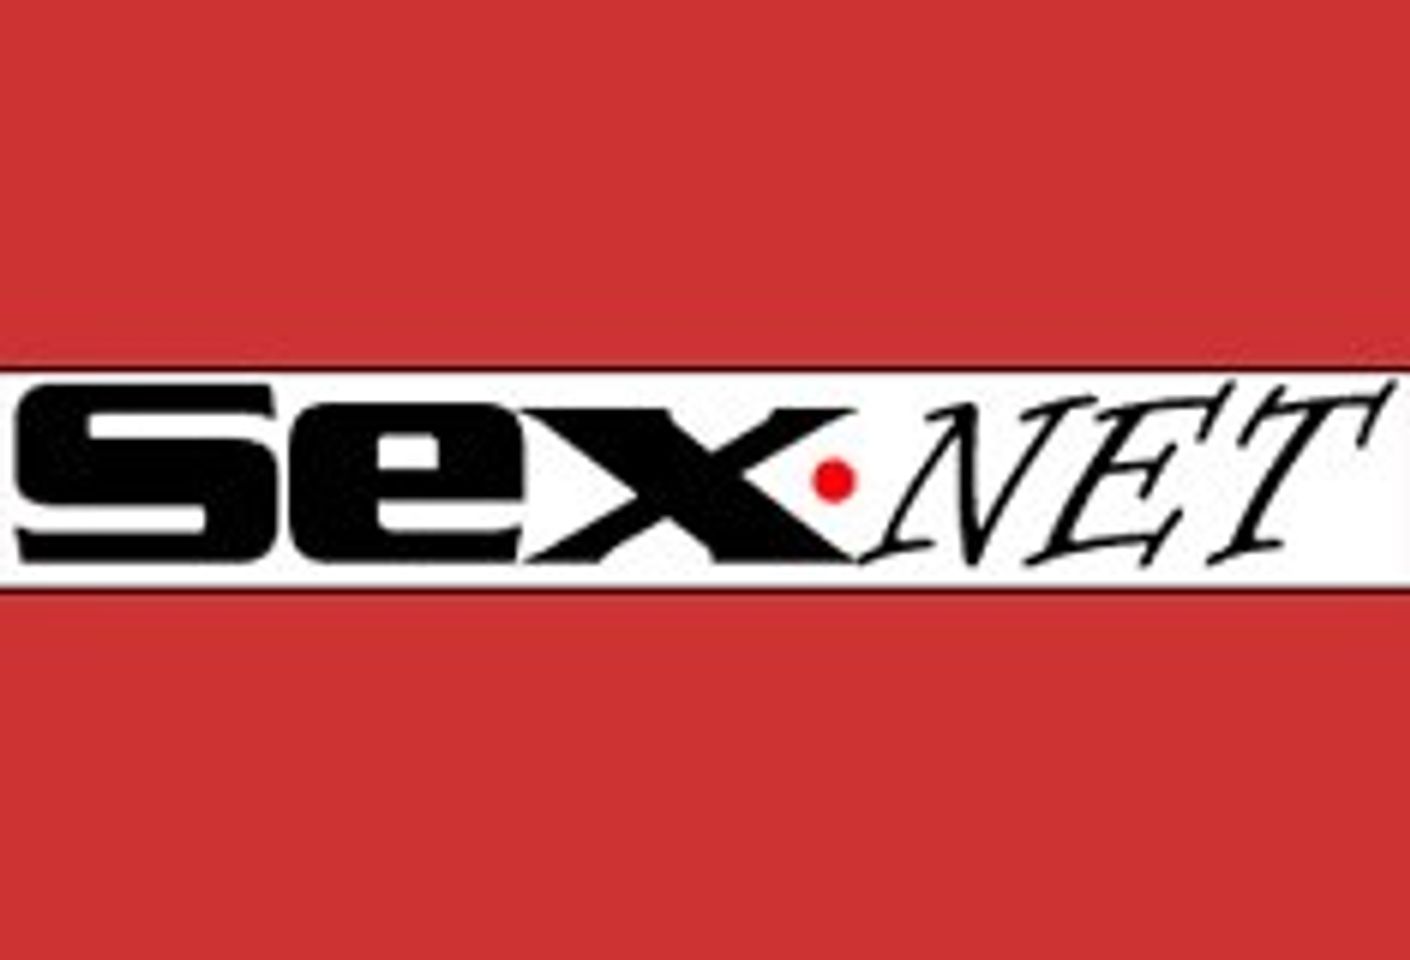 Sex.com Now Grant Media, Prepares to Move to Sex.net